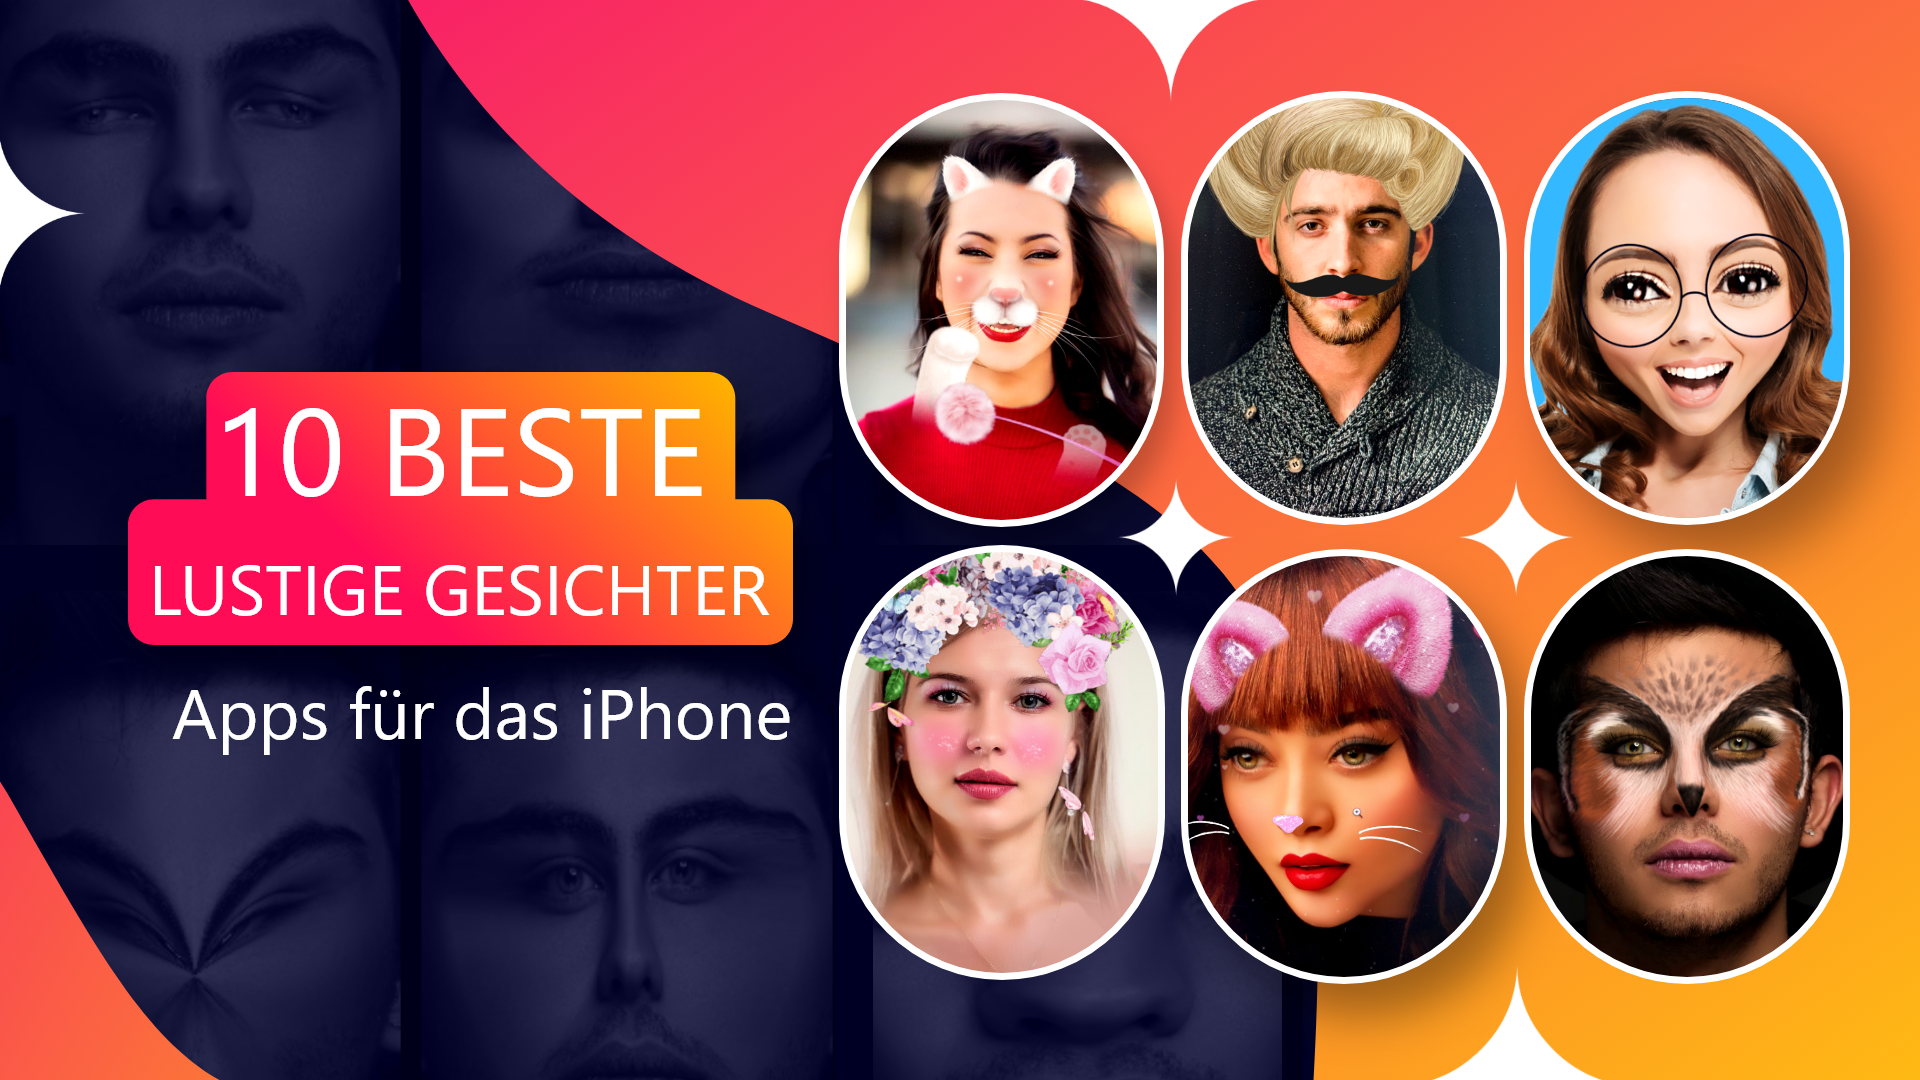 Die besten Apps für lustige Gesichter für das iPhone